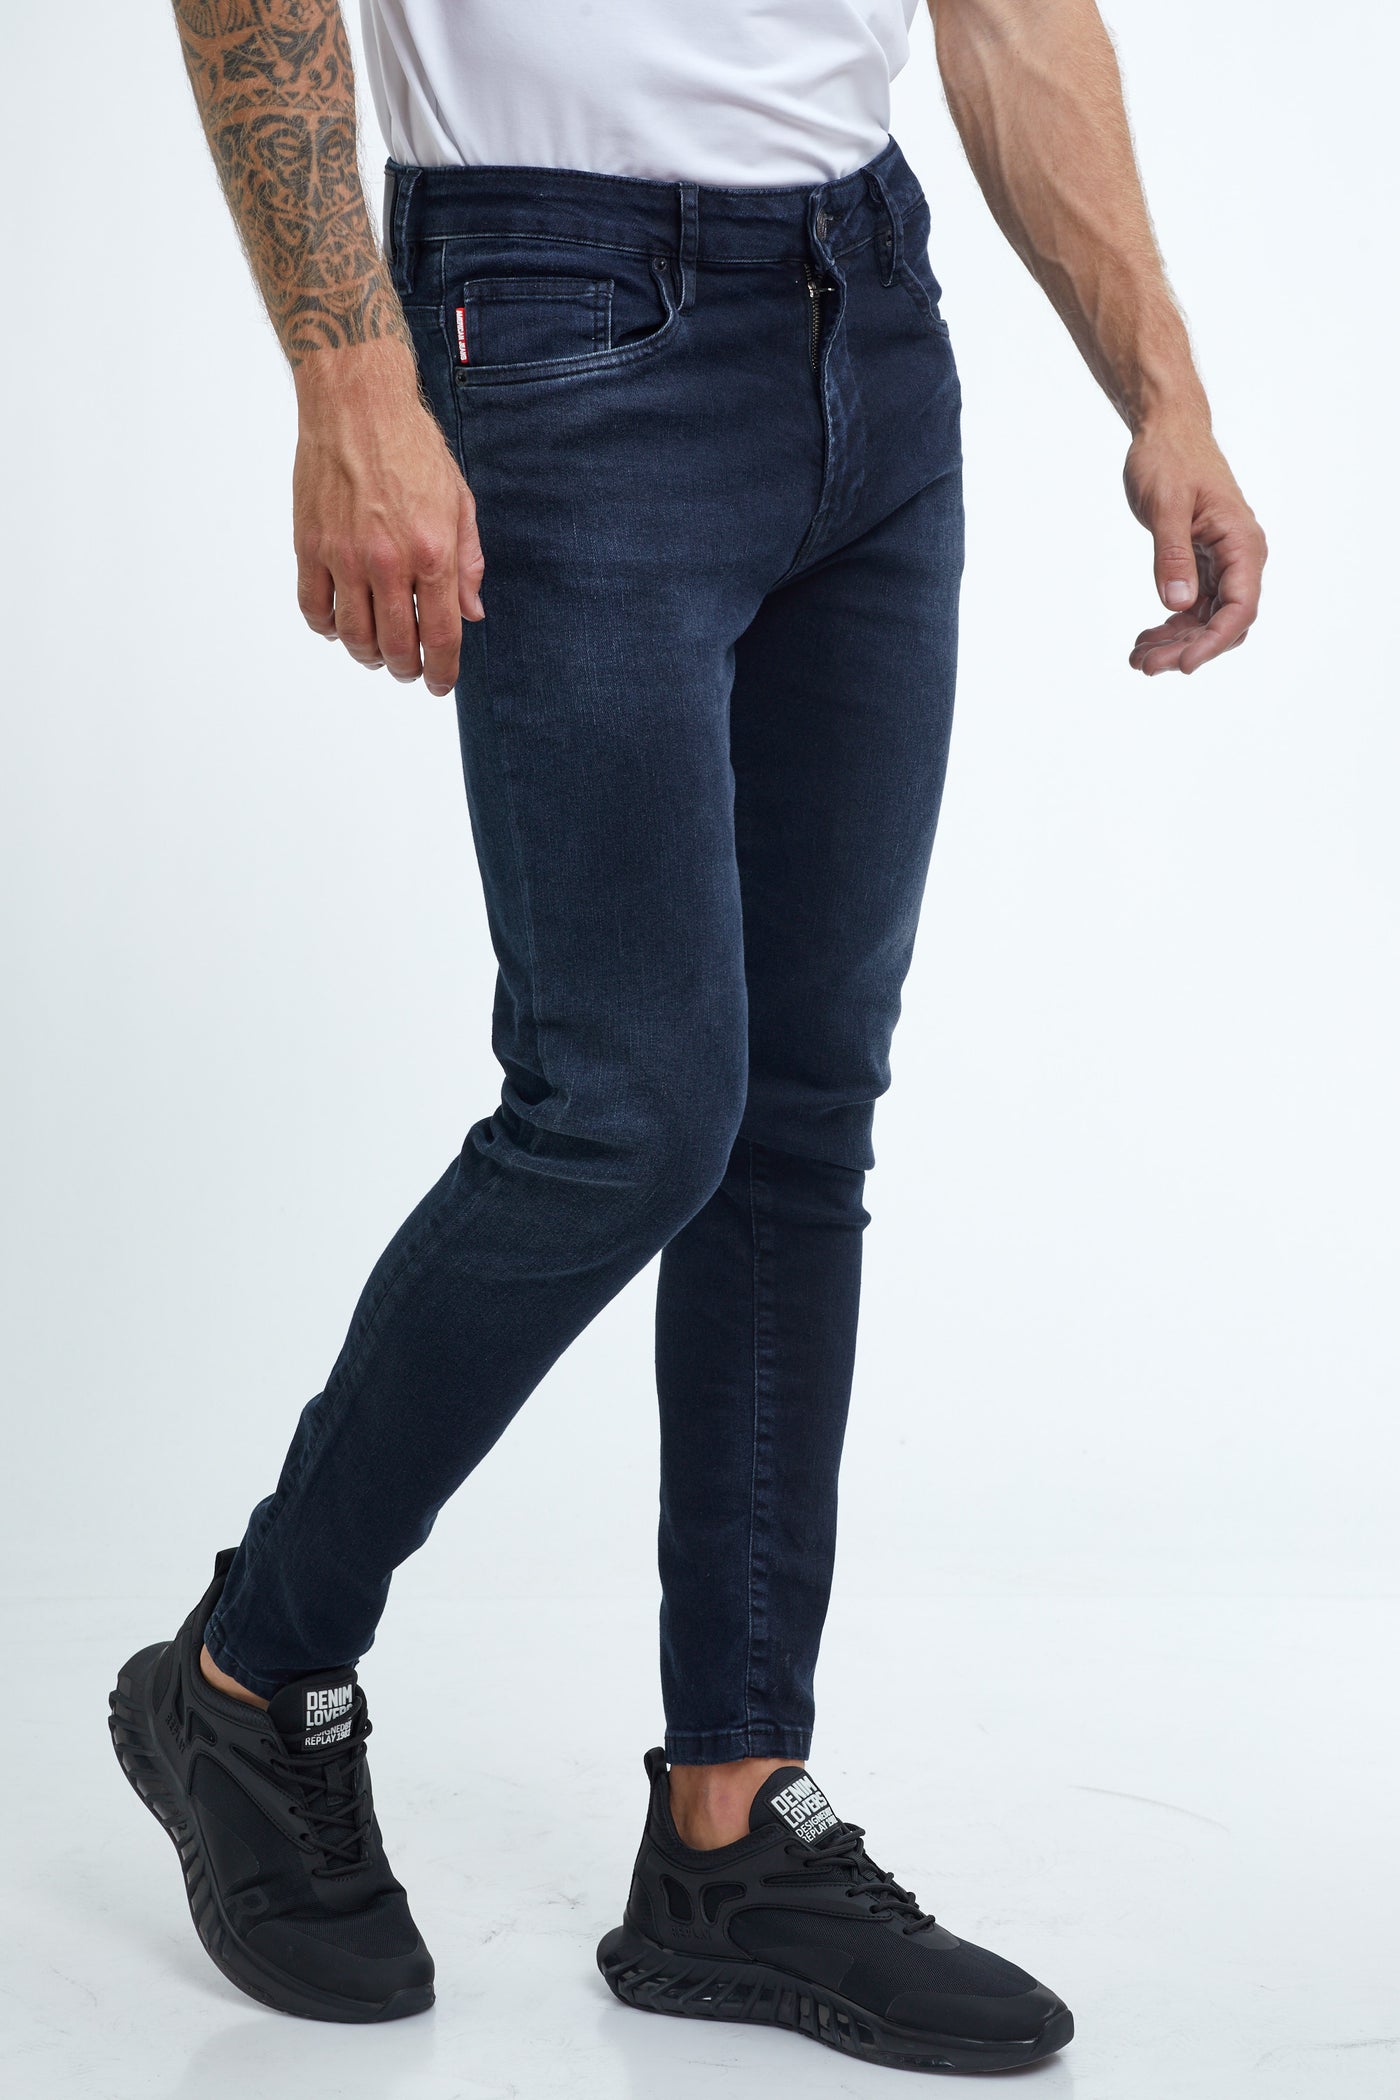 מכנס ג'ינס סקיני כחול 177